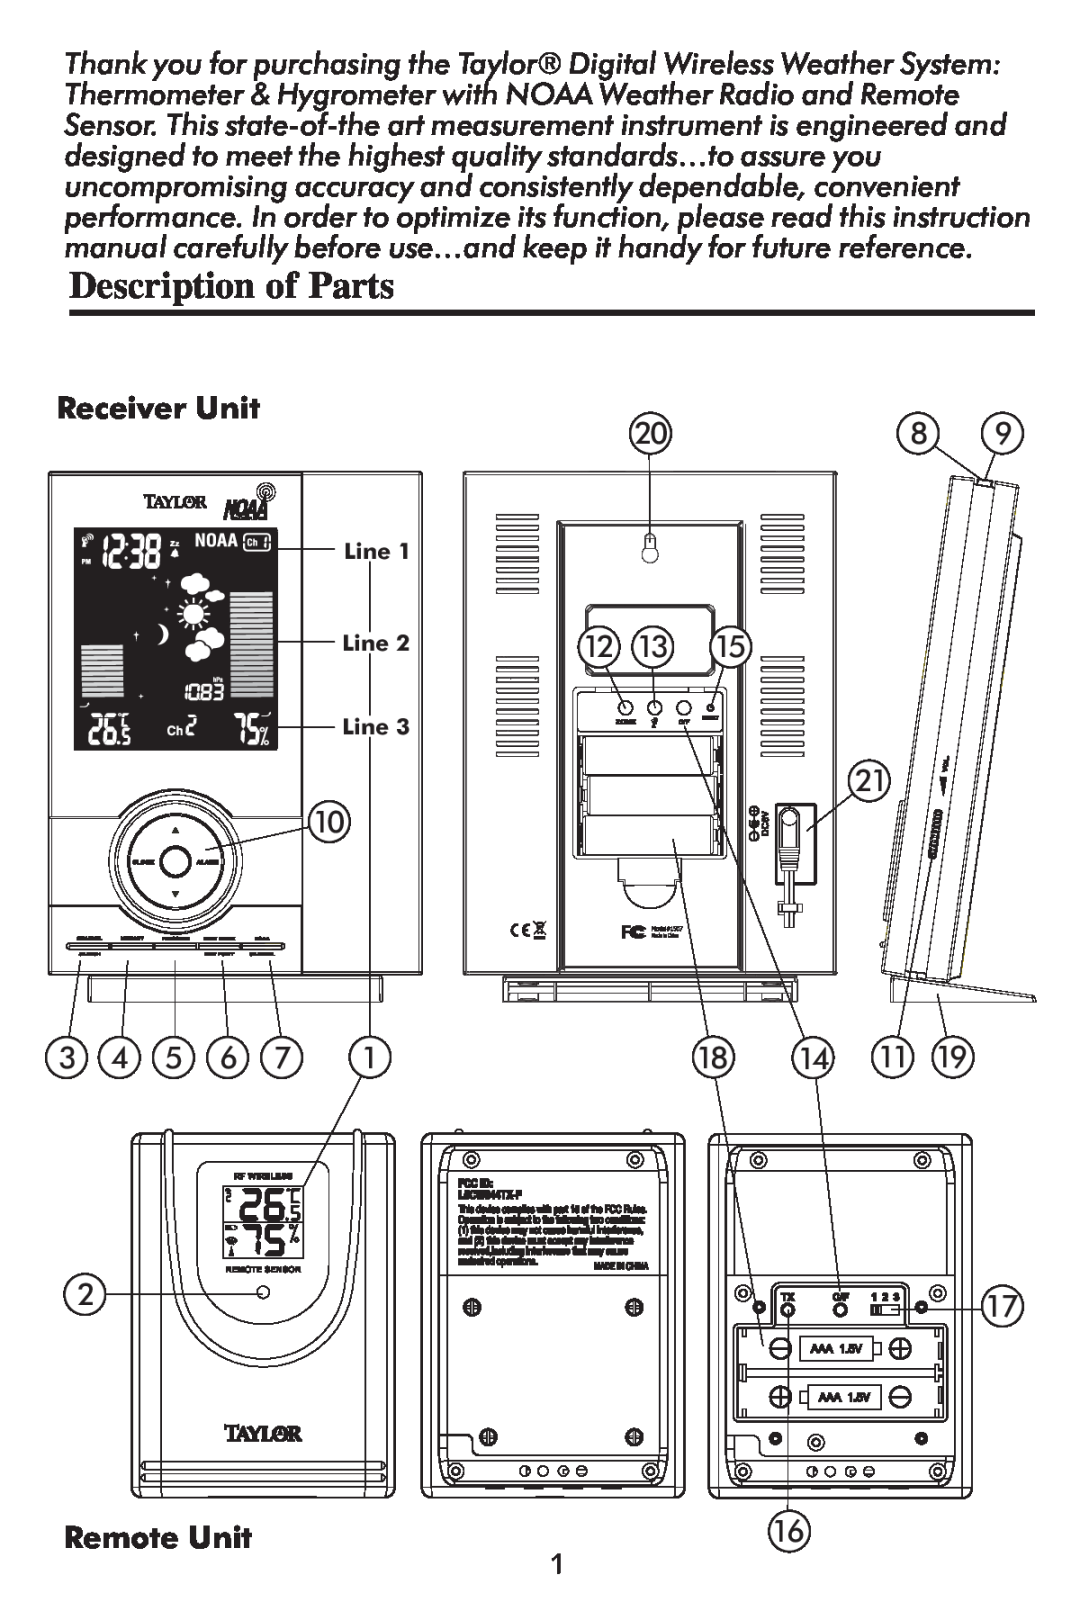 Taylor 1507 instruction manual Description of Parts, Receiver Unit, Remote Unit 